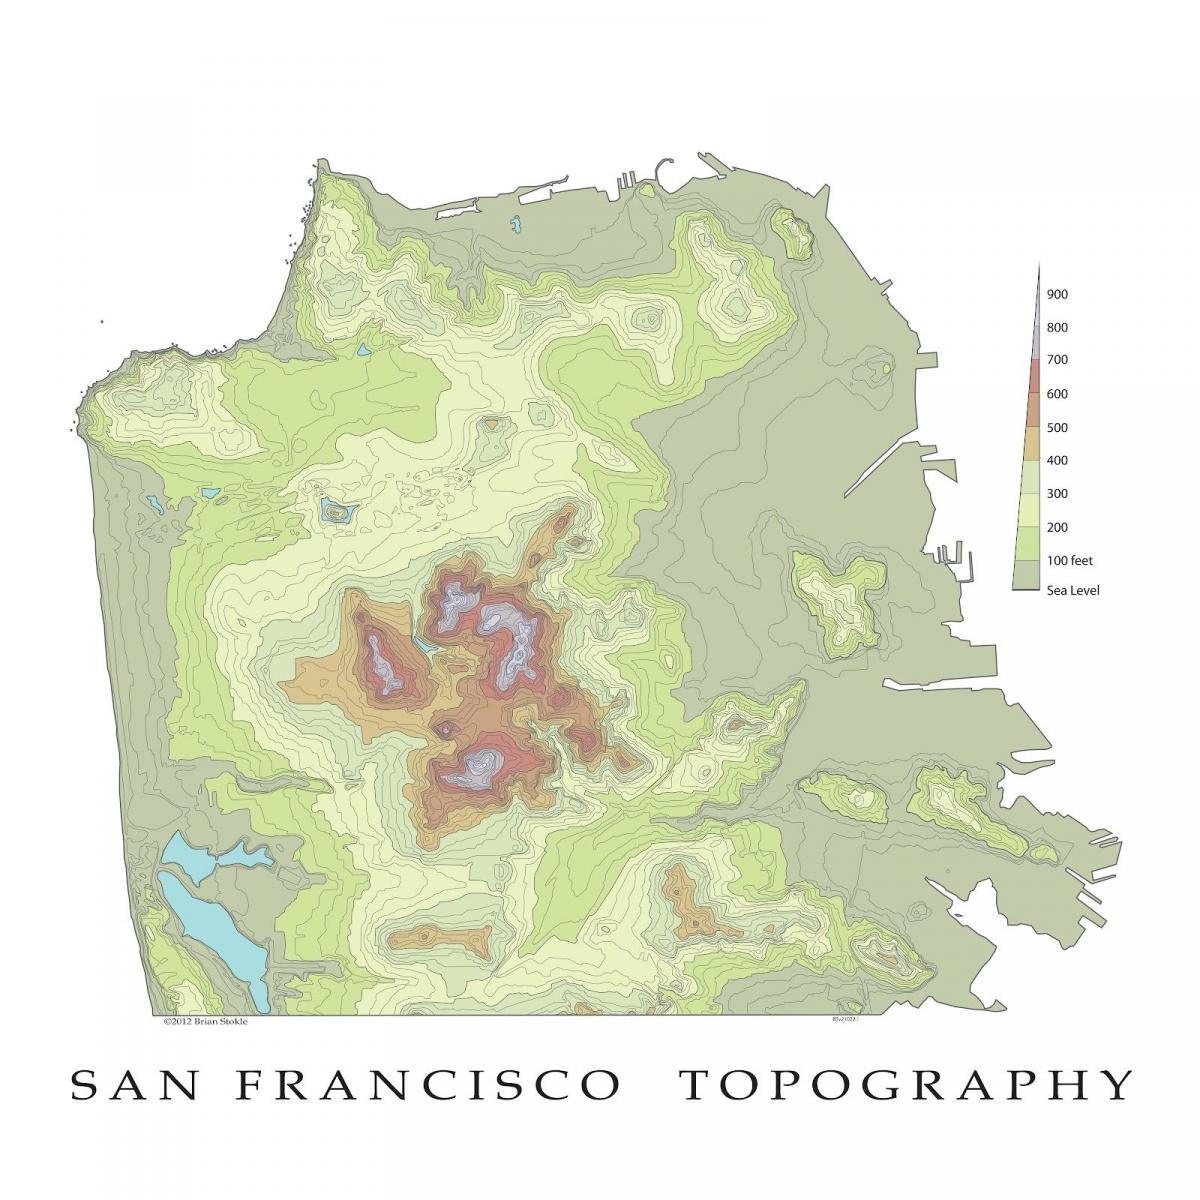 Սան-Ֆրանցիսկոյում մասշտաբի տեղագրական քարտեզի վրա